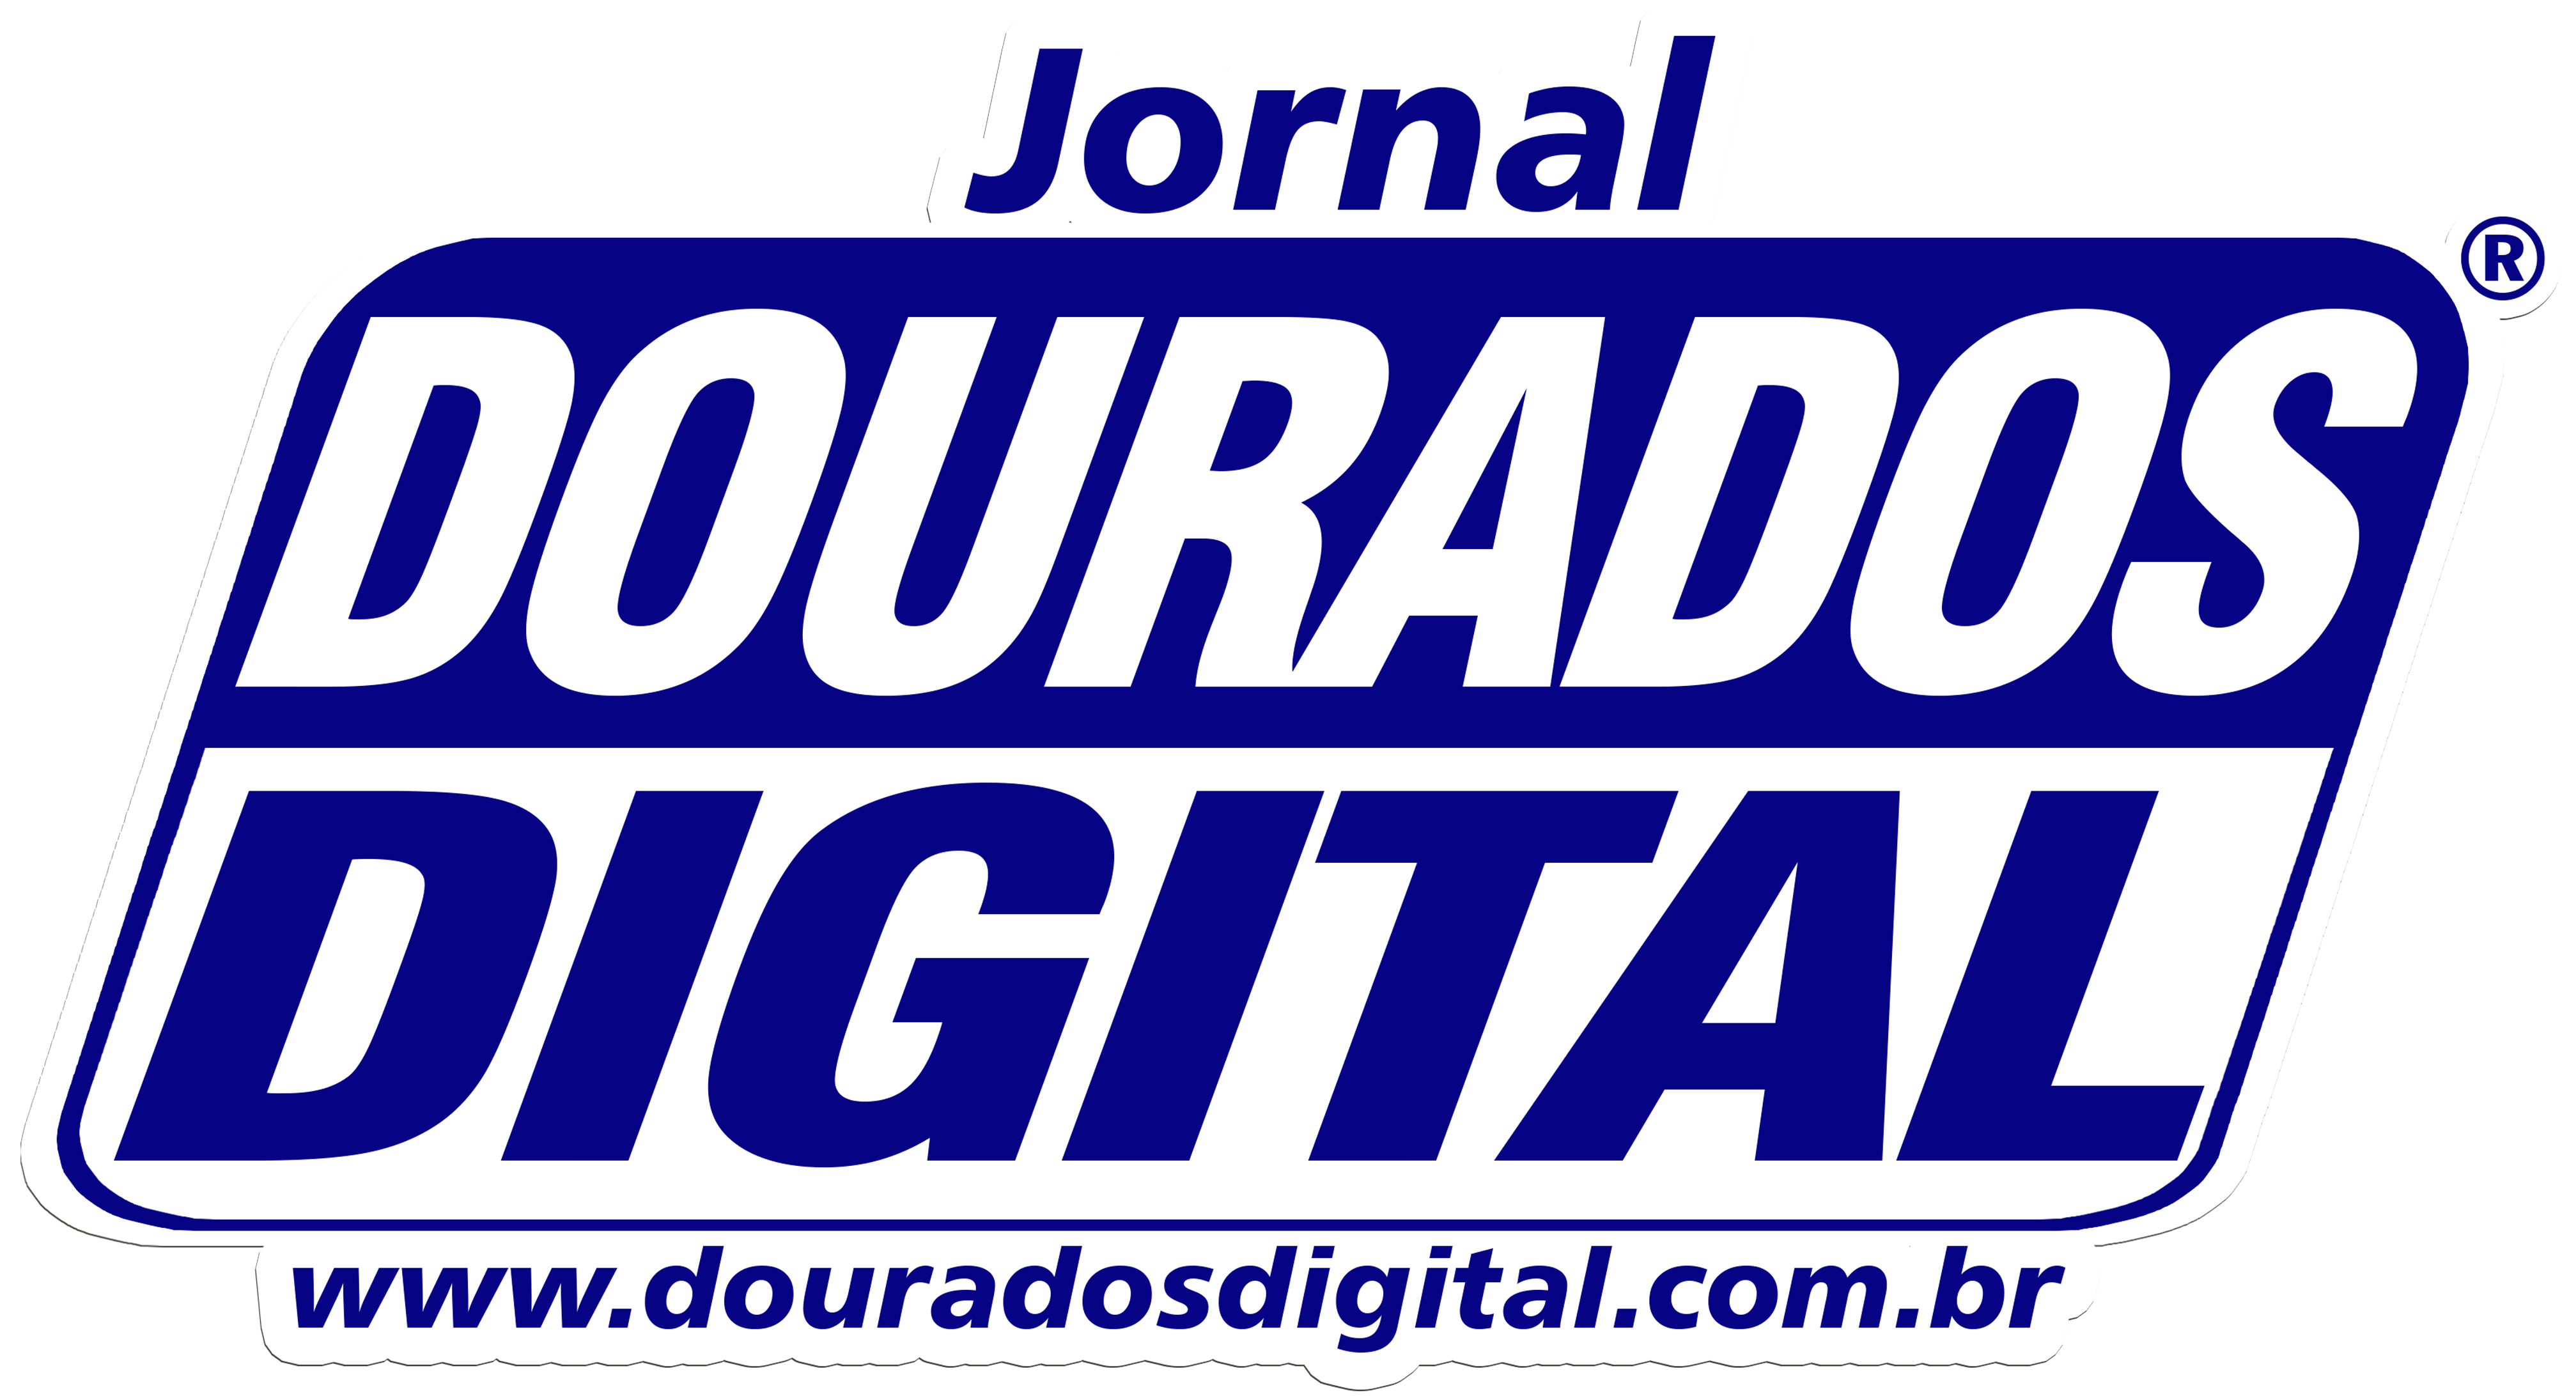 Jornal Dourados Digital®